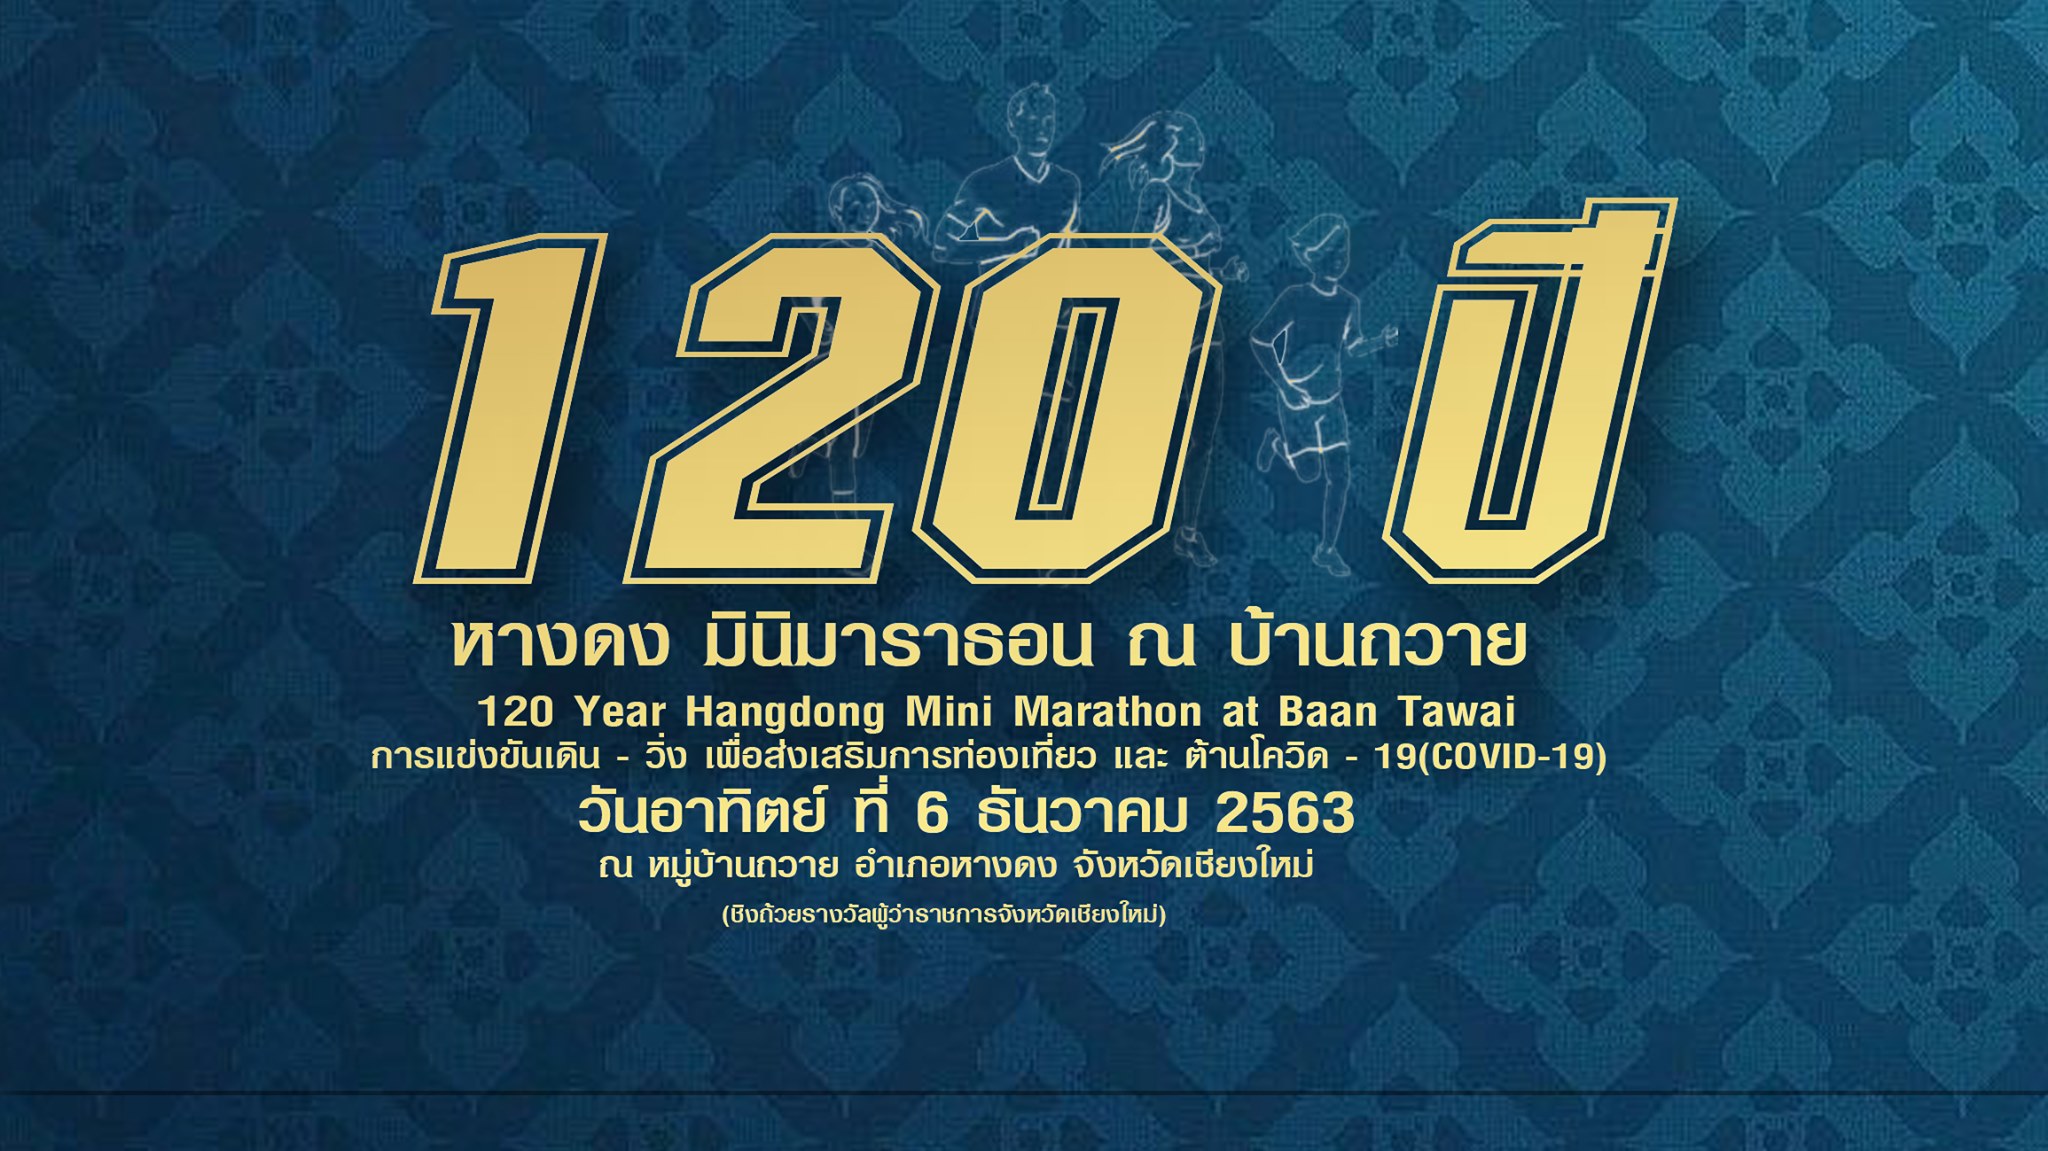 120th Anniversary Hangdong Mini Marathon at Baan Tawai﻿